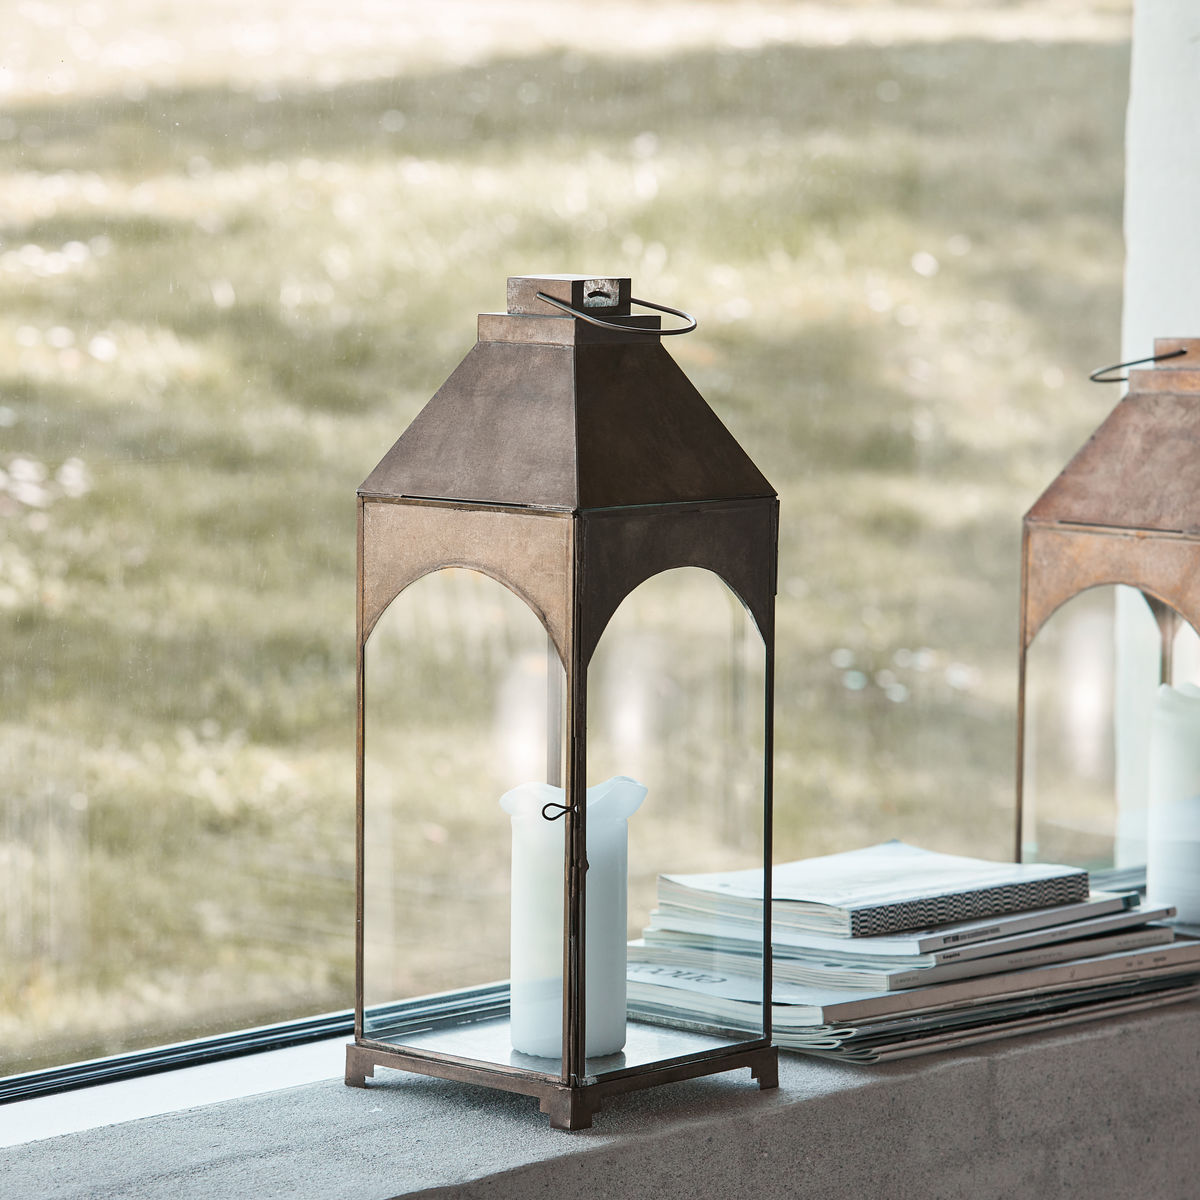 Laterne, Arch in Antikes Messing präsentiert im Onlineshop von KAQTU Design AG. Laterne ist von House Doctor